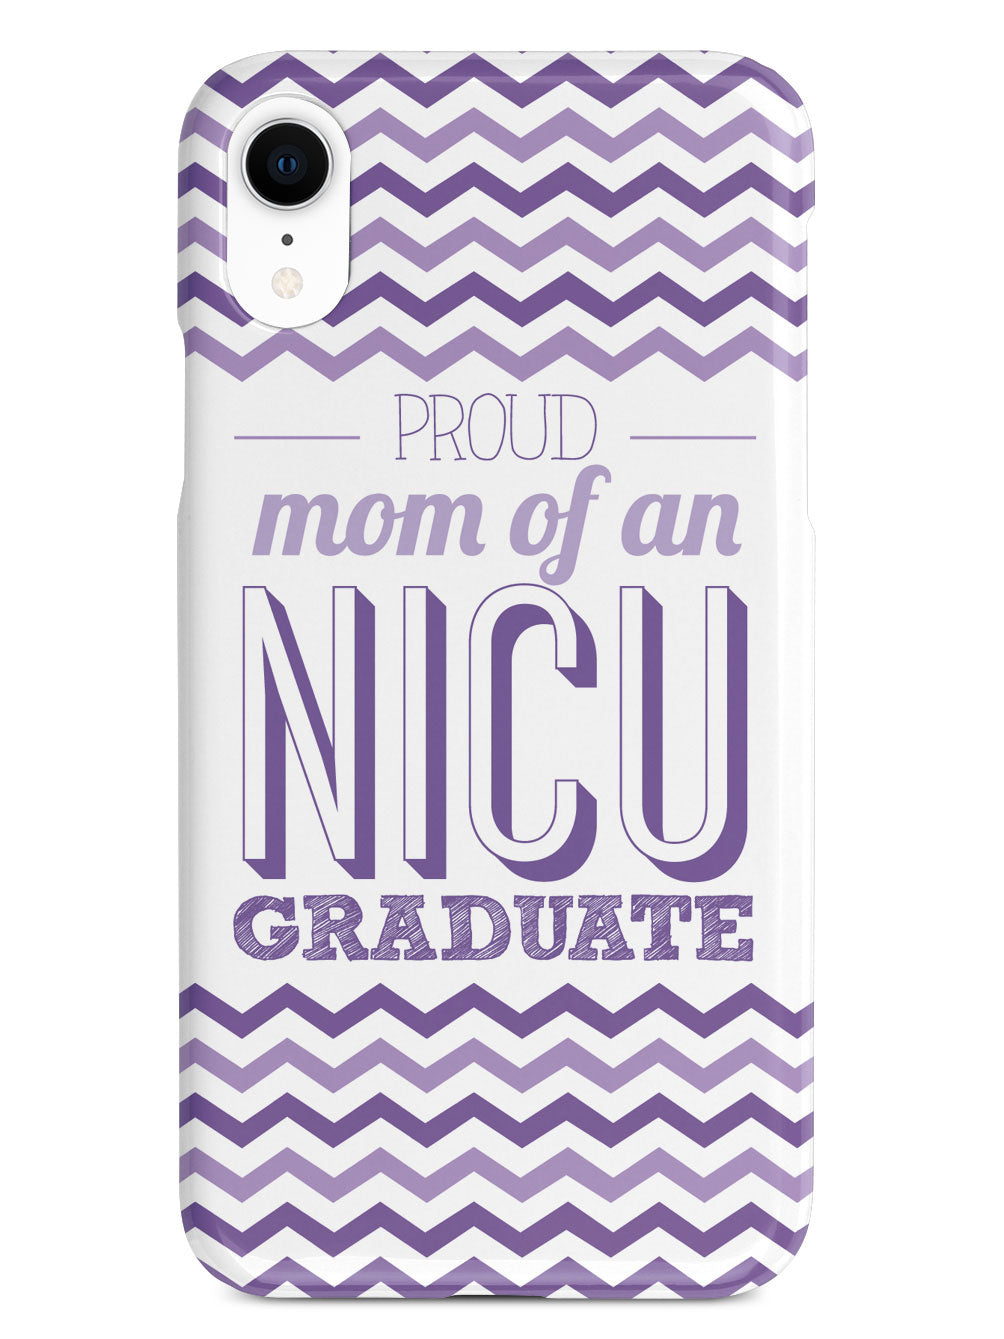 Proud Mom - NICU Graduate - Purple Case